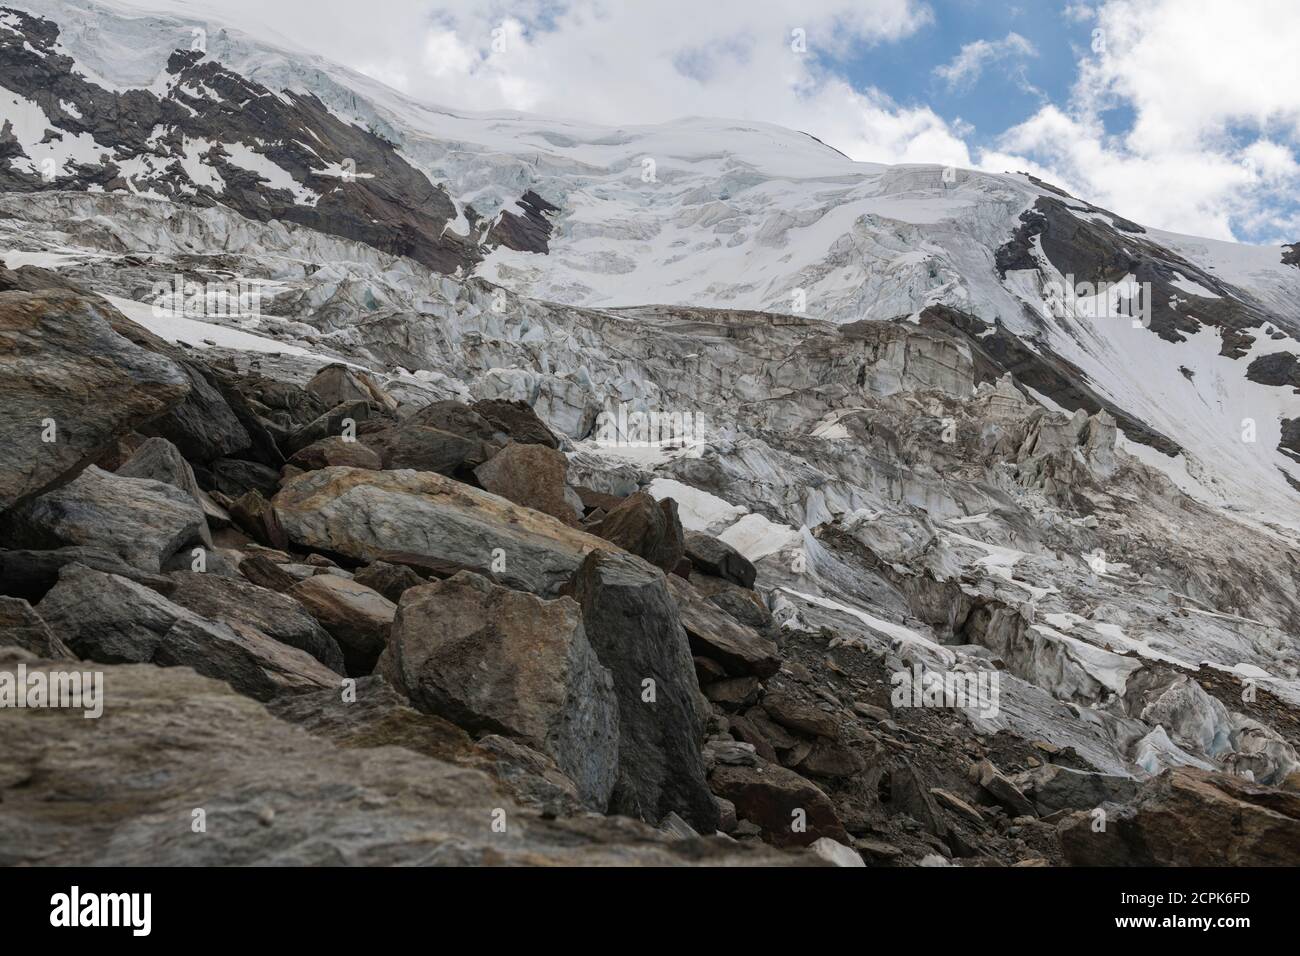 Switzerland, Canton of Valais, Saas Valley, Saas-Grund, Weissmies, Trift Glacier Stock Photo